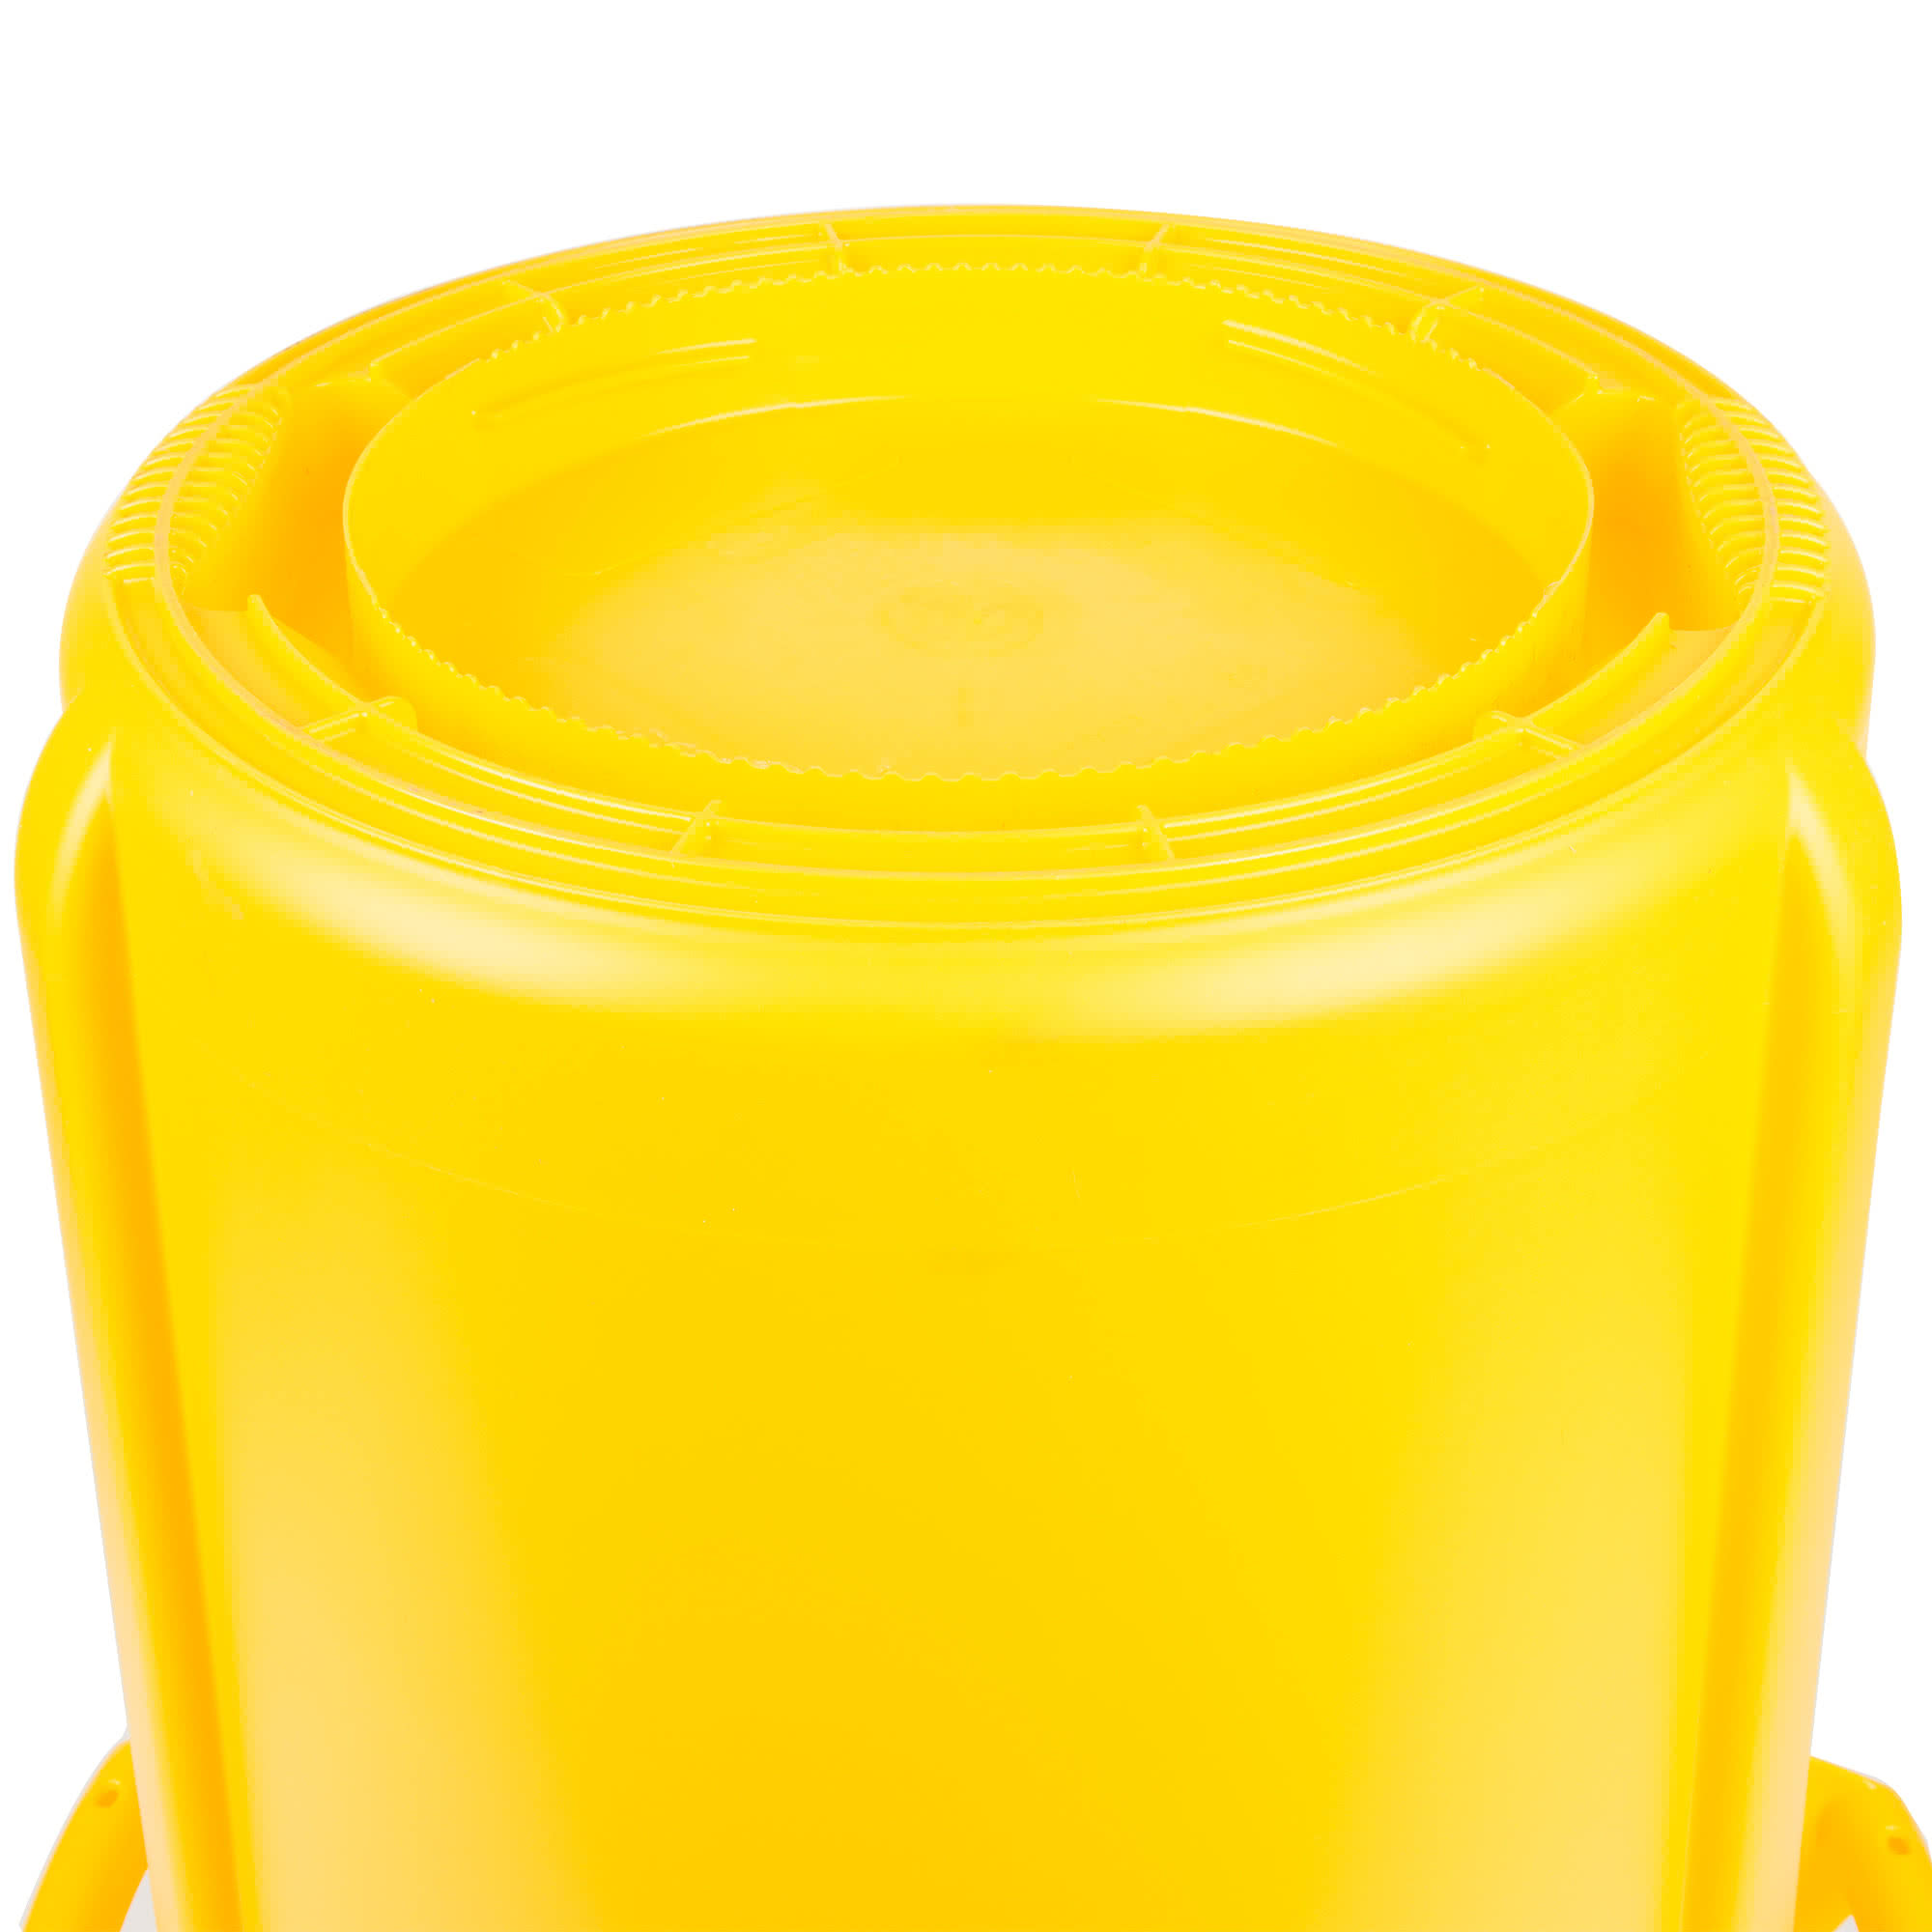 Rubbermaid FG262000YEL contenedor Brute color amarillo con capacidad para 20 galones